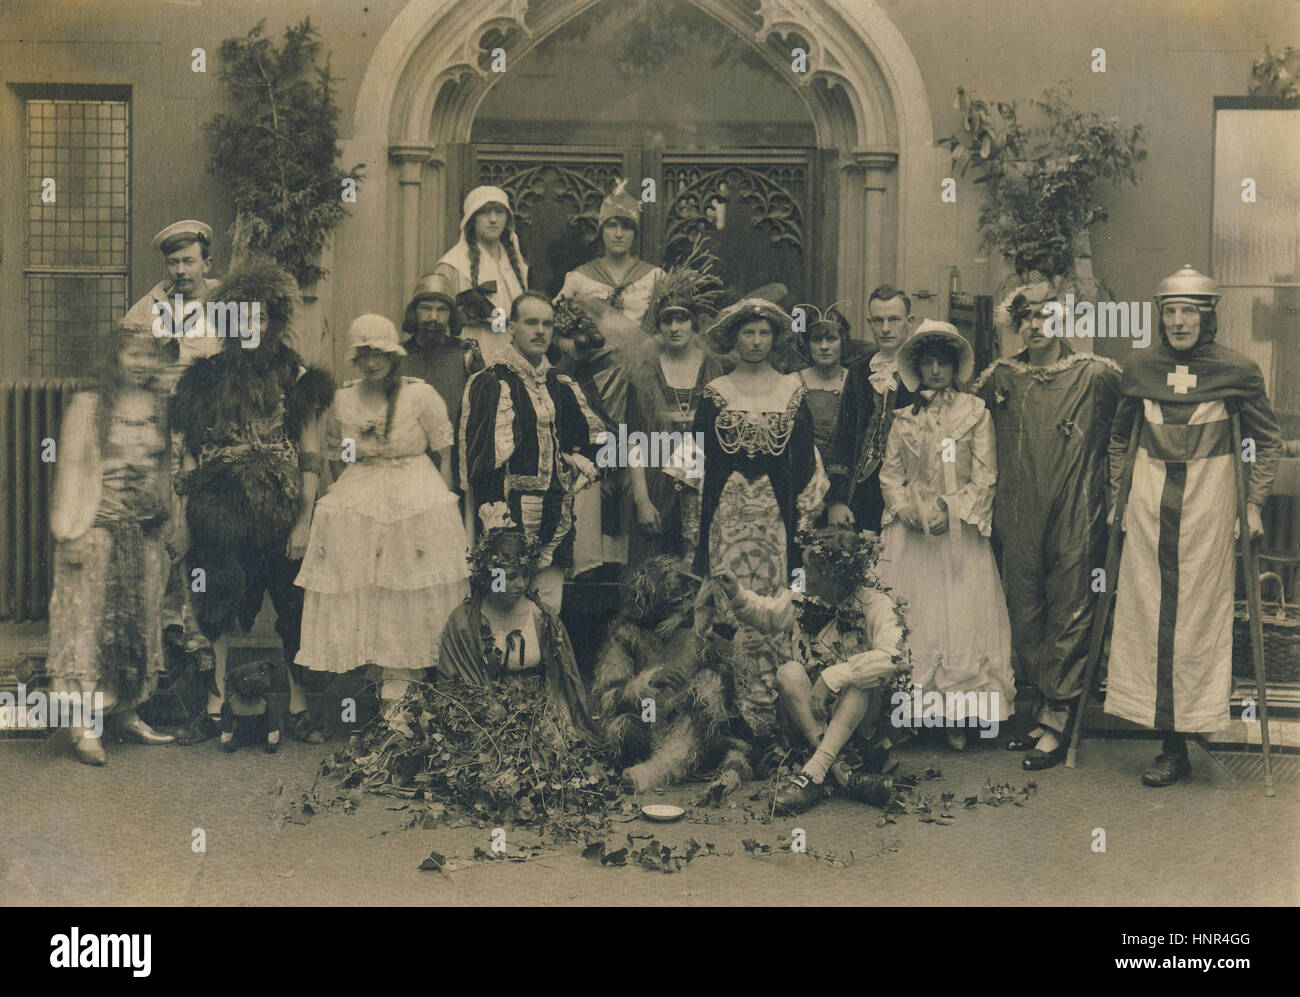 Archiv Bild der Laienspielgruppe tragen Theater Kostüm c1910s Stockfoto